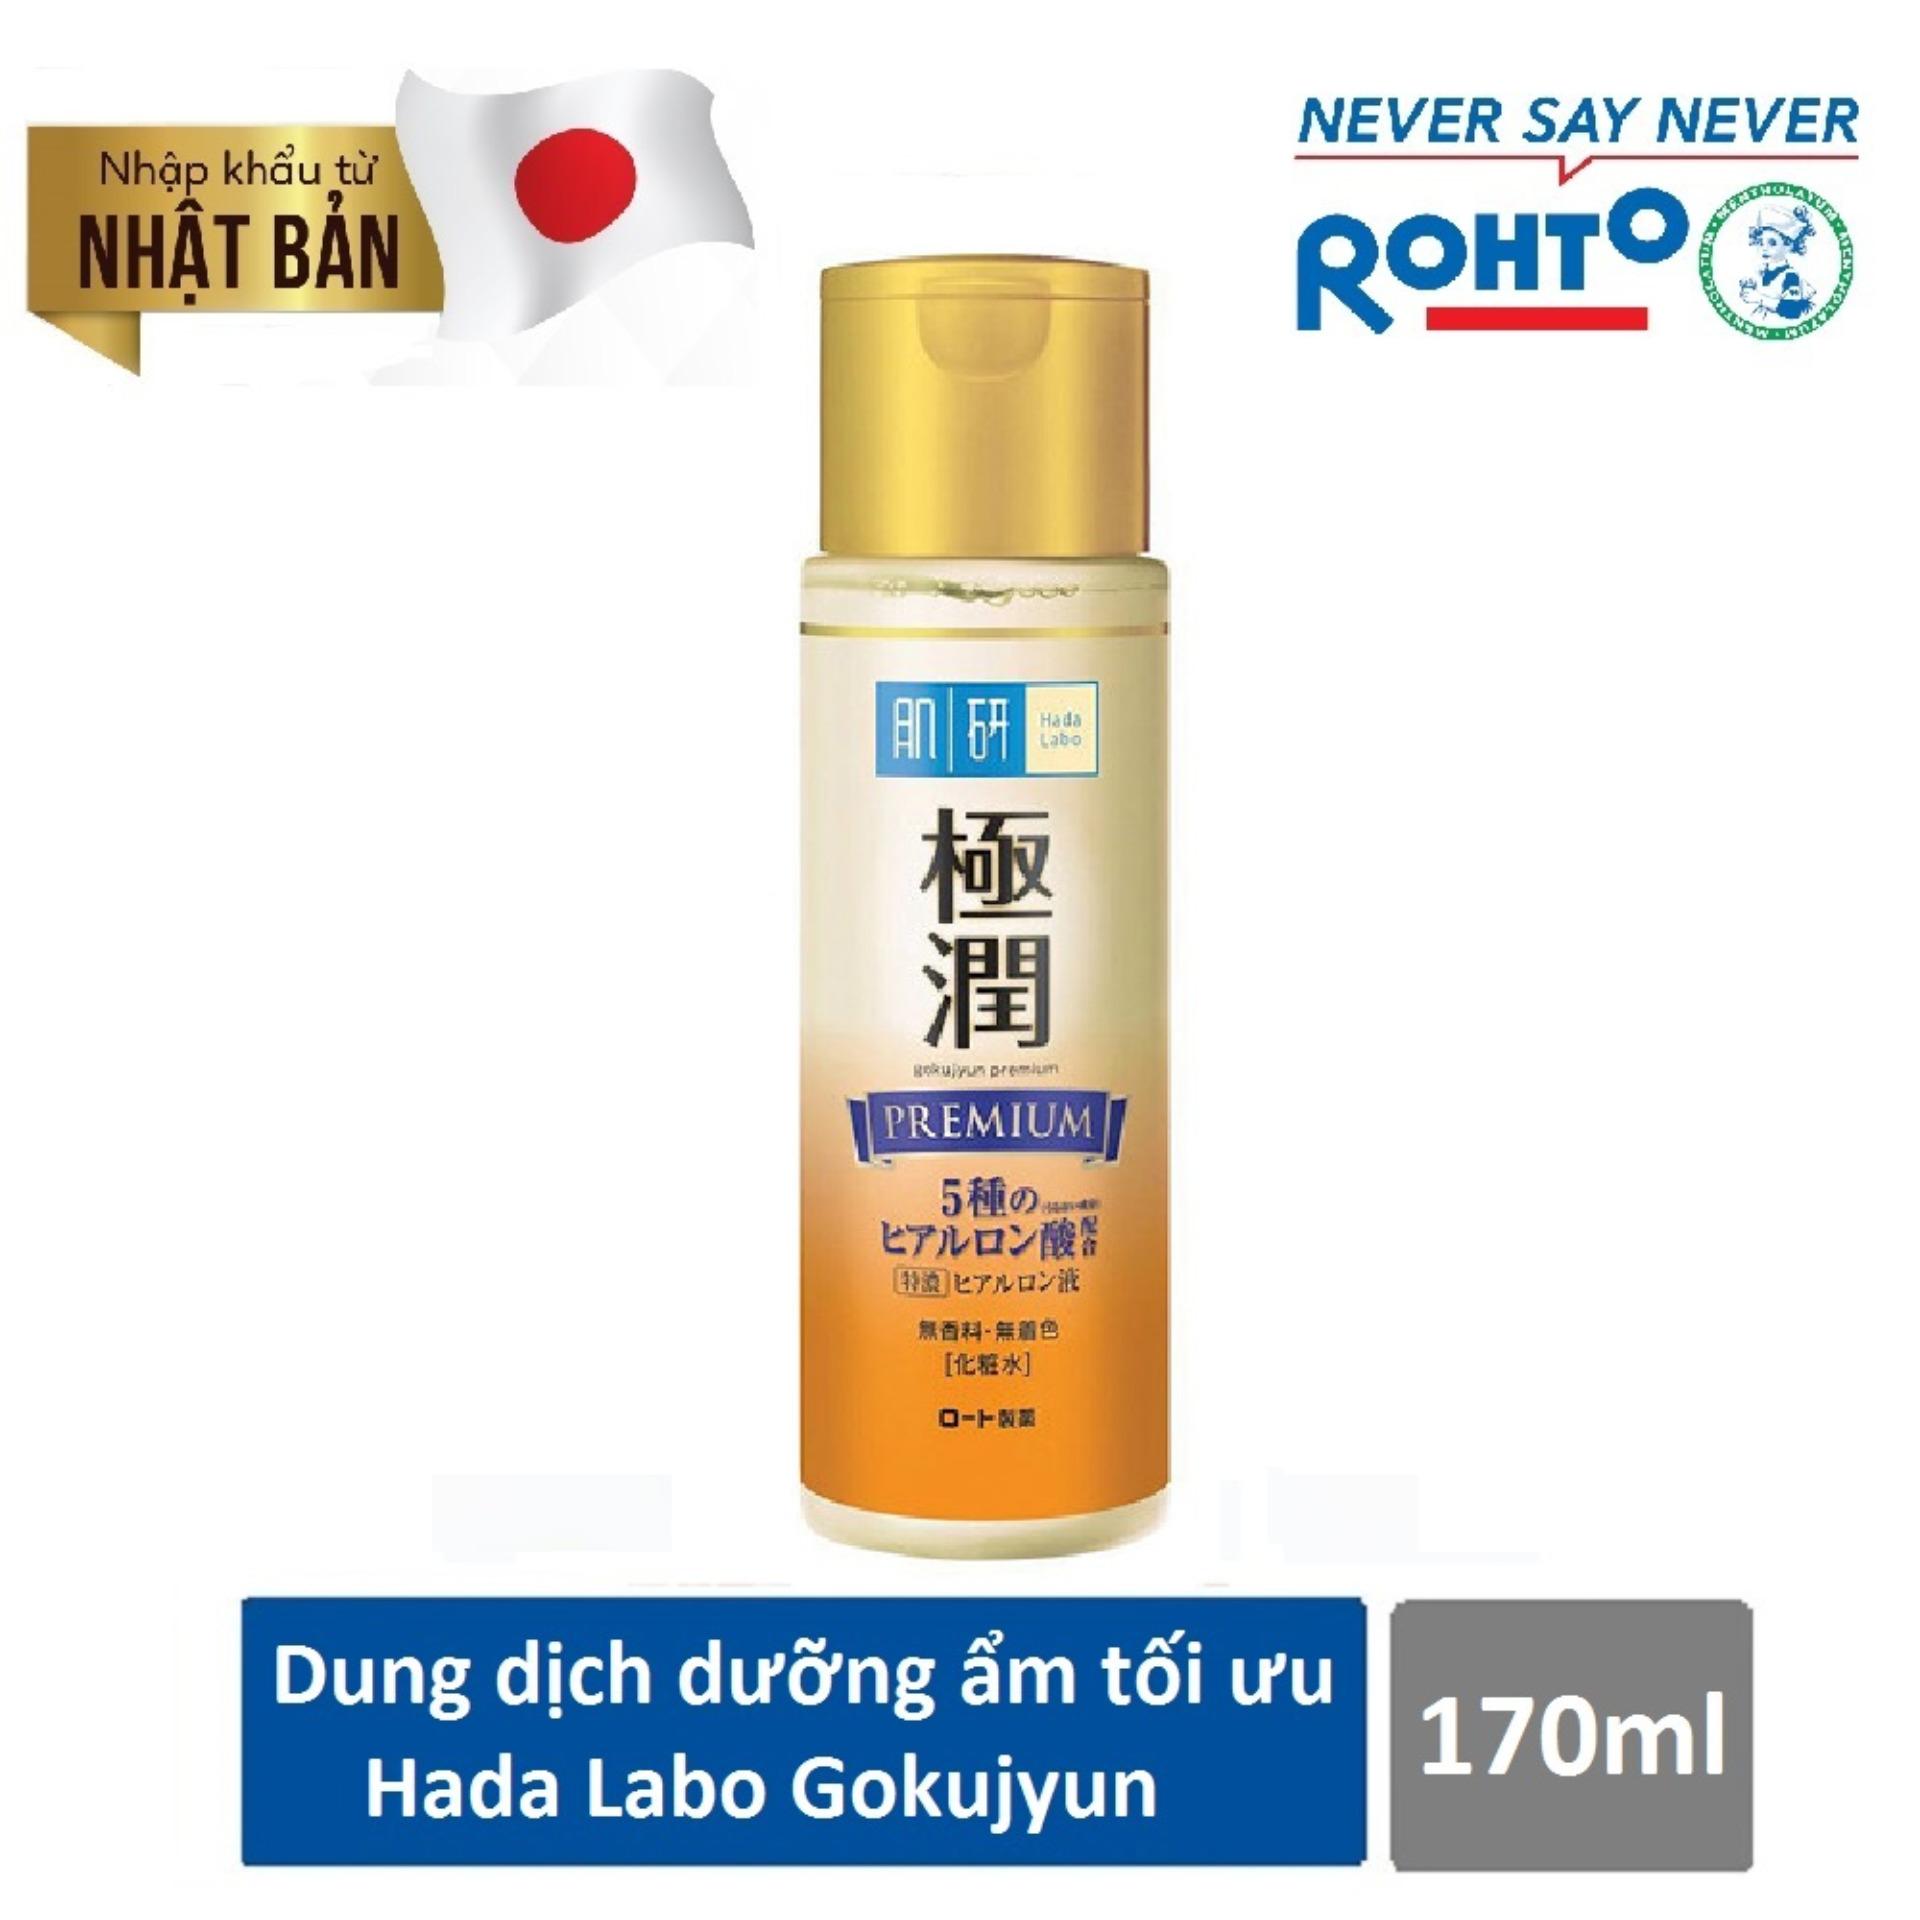 Dung dịch dưỡng ẩm tối ưu Hada Labo Gokujyun Premium Lotion 170ml ( Nhập khẩu từ Nhật Bản)